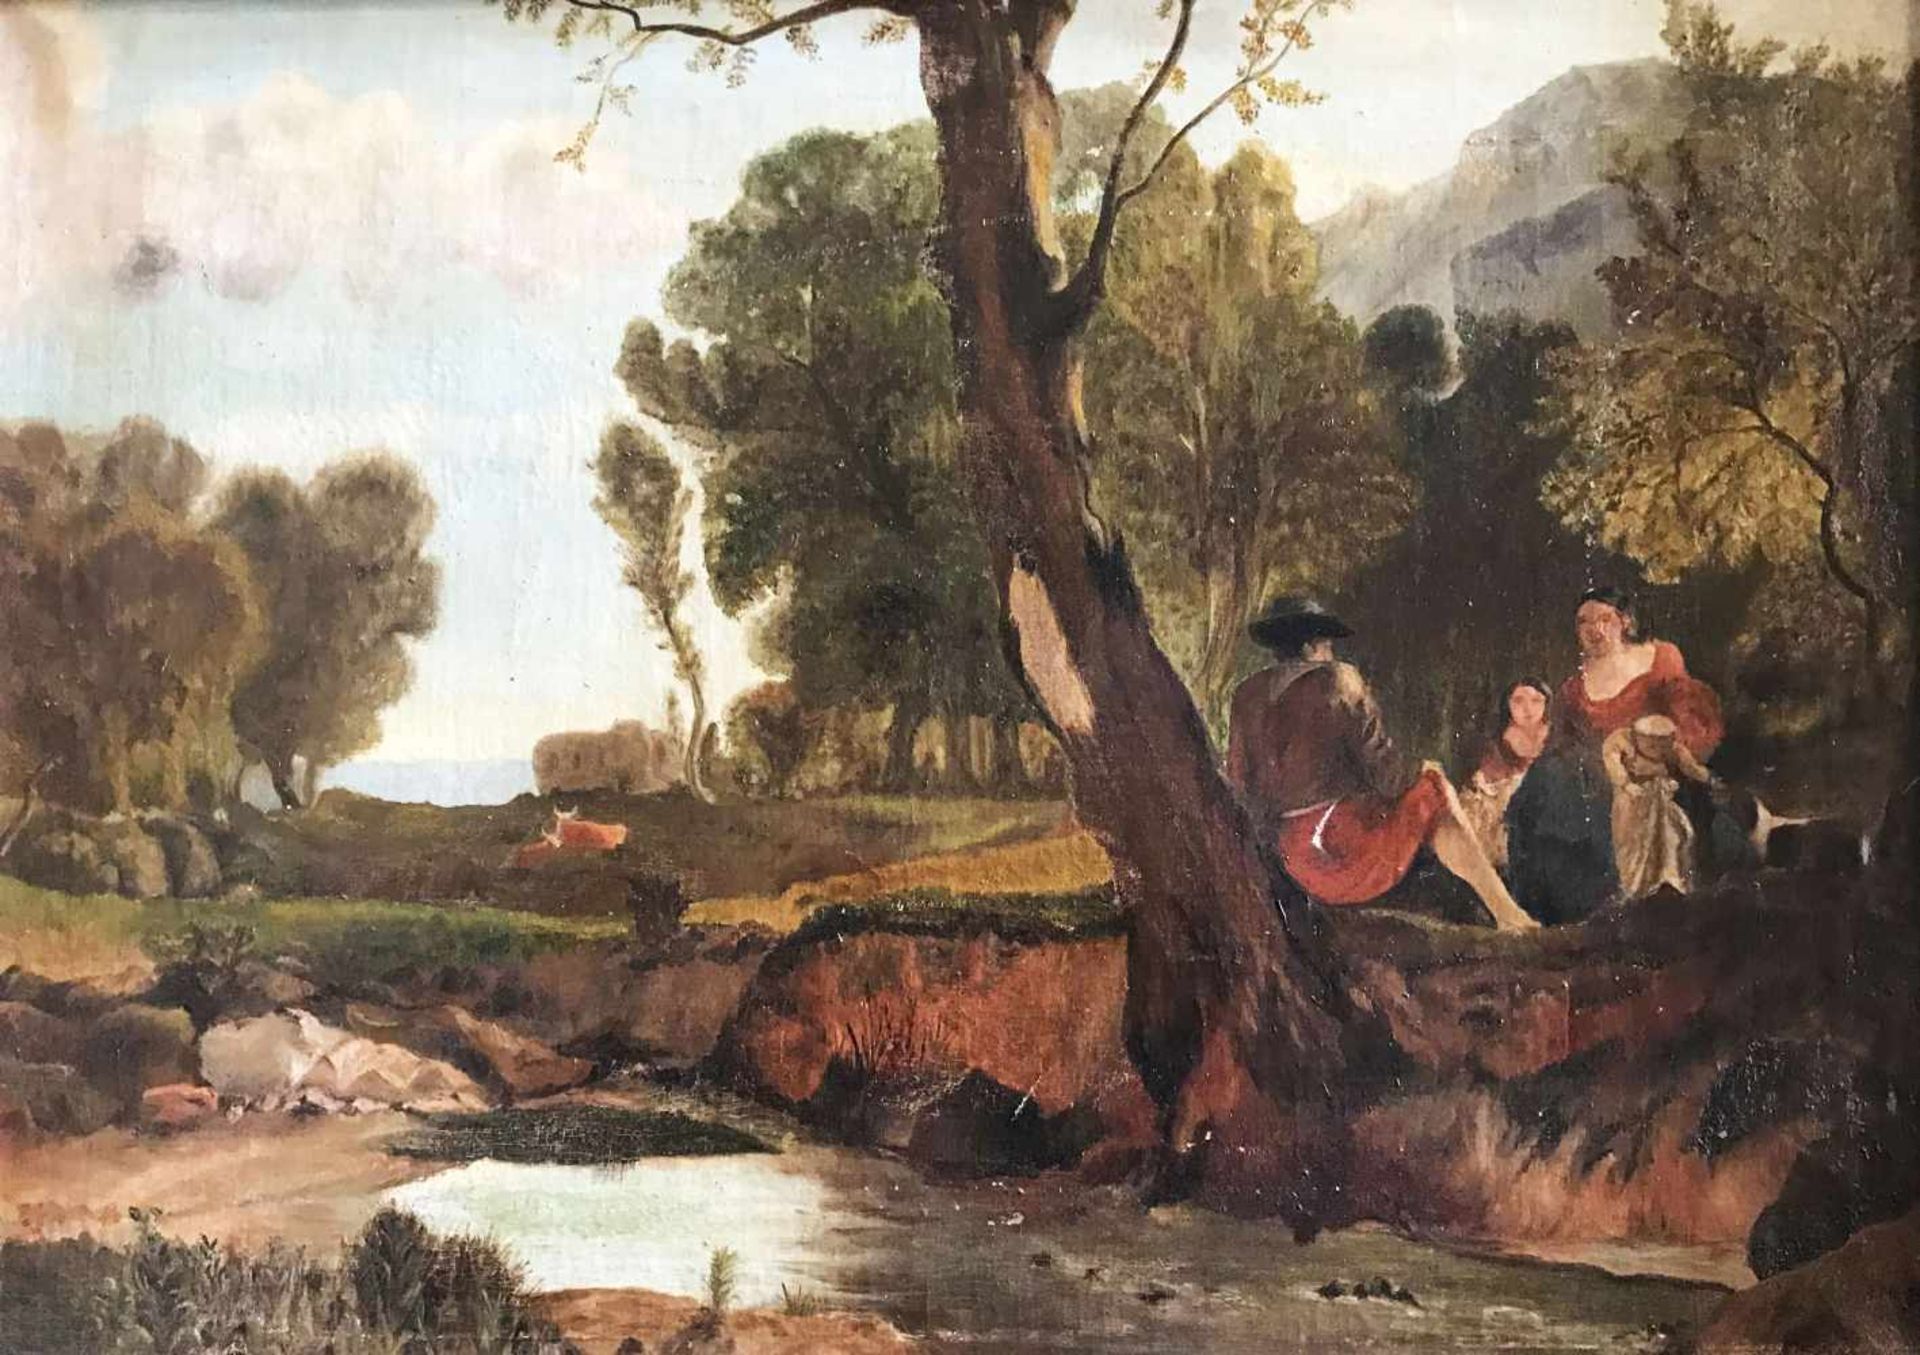 Barthélémy MENN (1815-1893) zugeschr., Landschaft mit Figurengruppe, bez. B. Menn, Öl/Lwd, 48 x 70